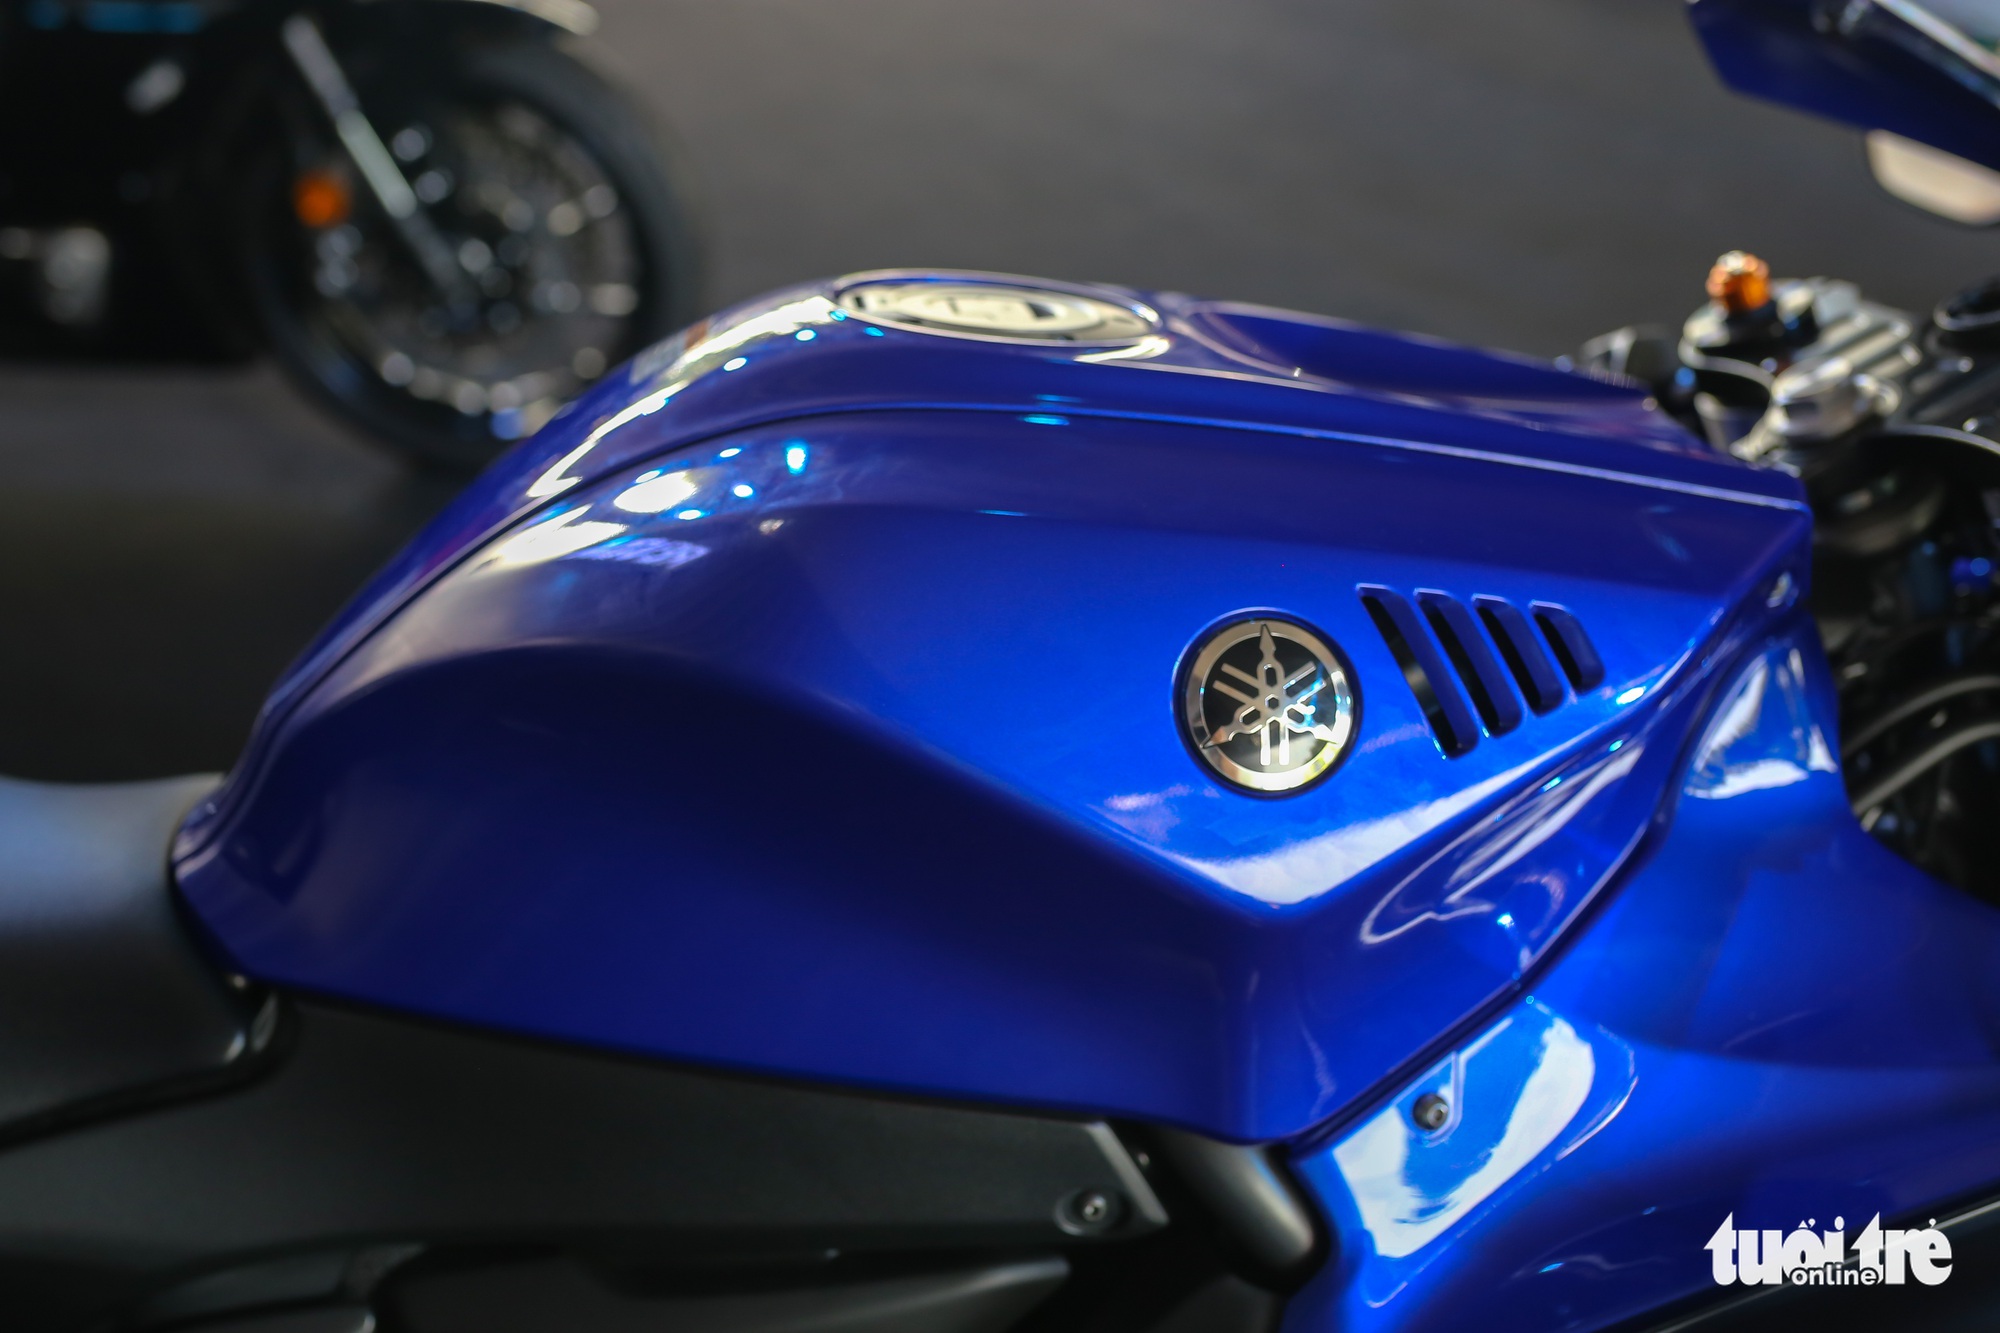 Yamaha YZF-R7 - Sportbike tầm trung giá 269 triệu đồng, thay thế 'huyền thoại' R6 - Ảnh 4.